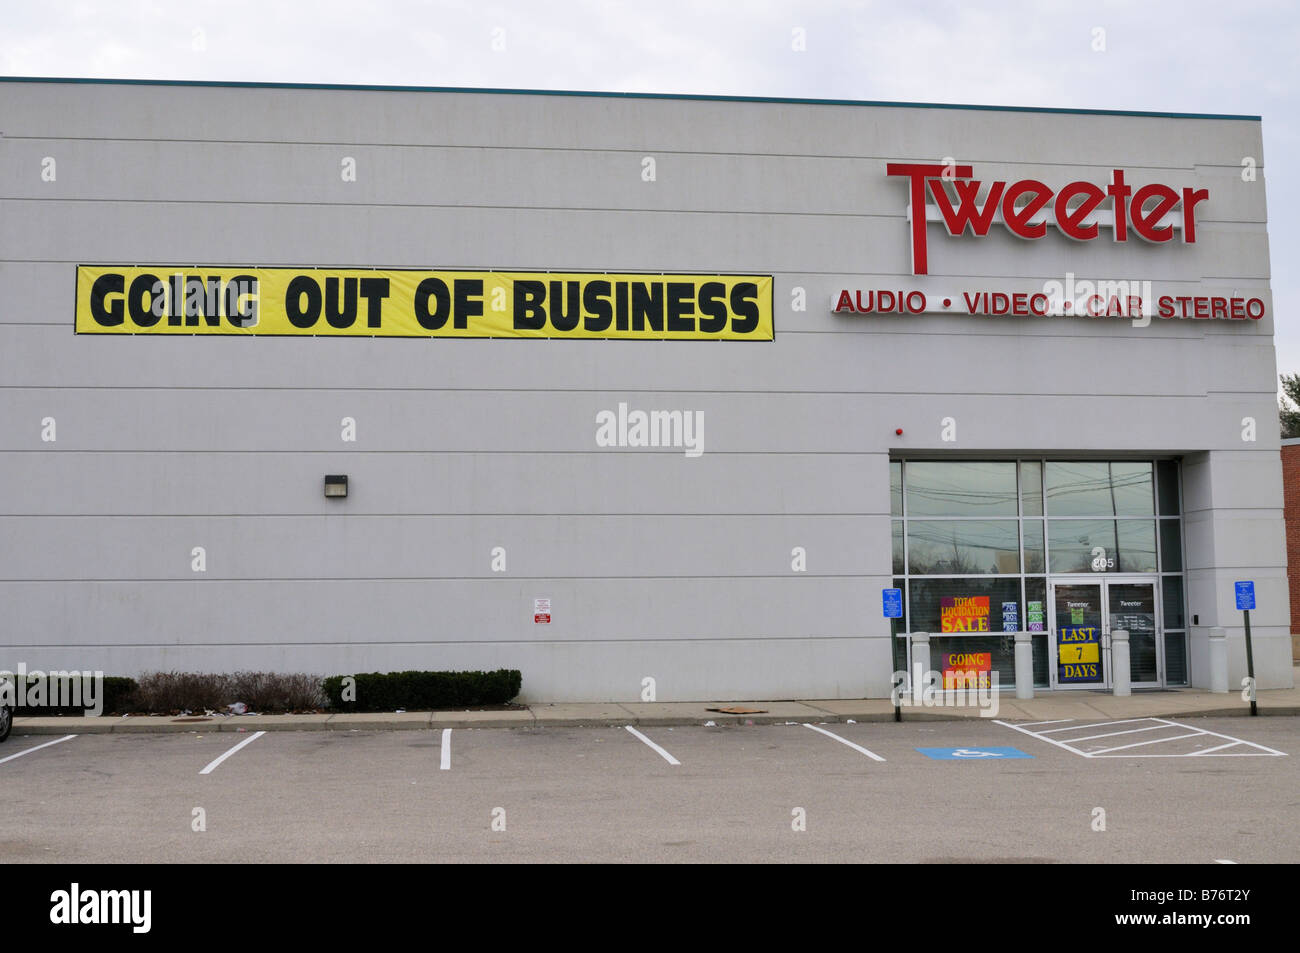 Schaufenster von einem Hochtöner Einzelhandel Elektronik mit Going out of Business Banner speichern Stockfoto